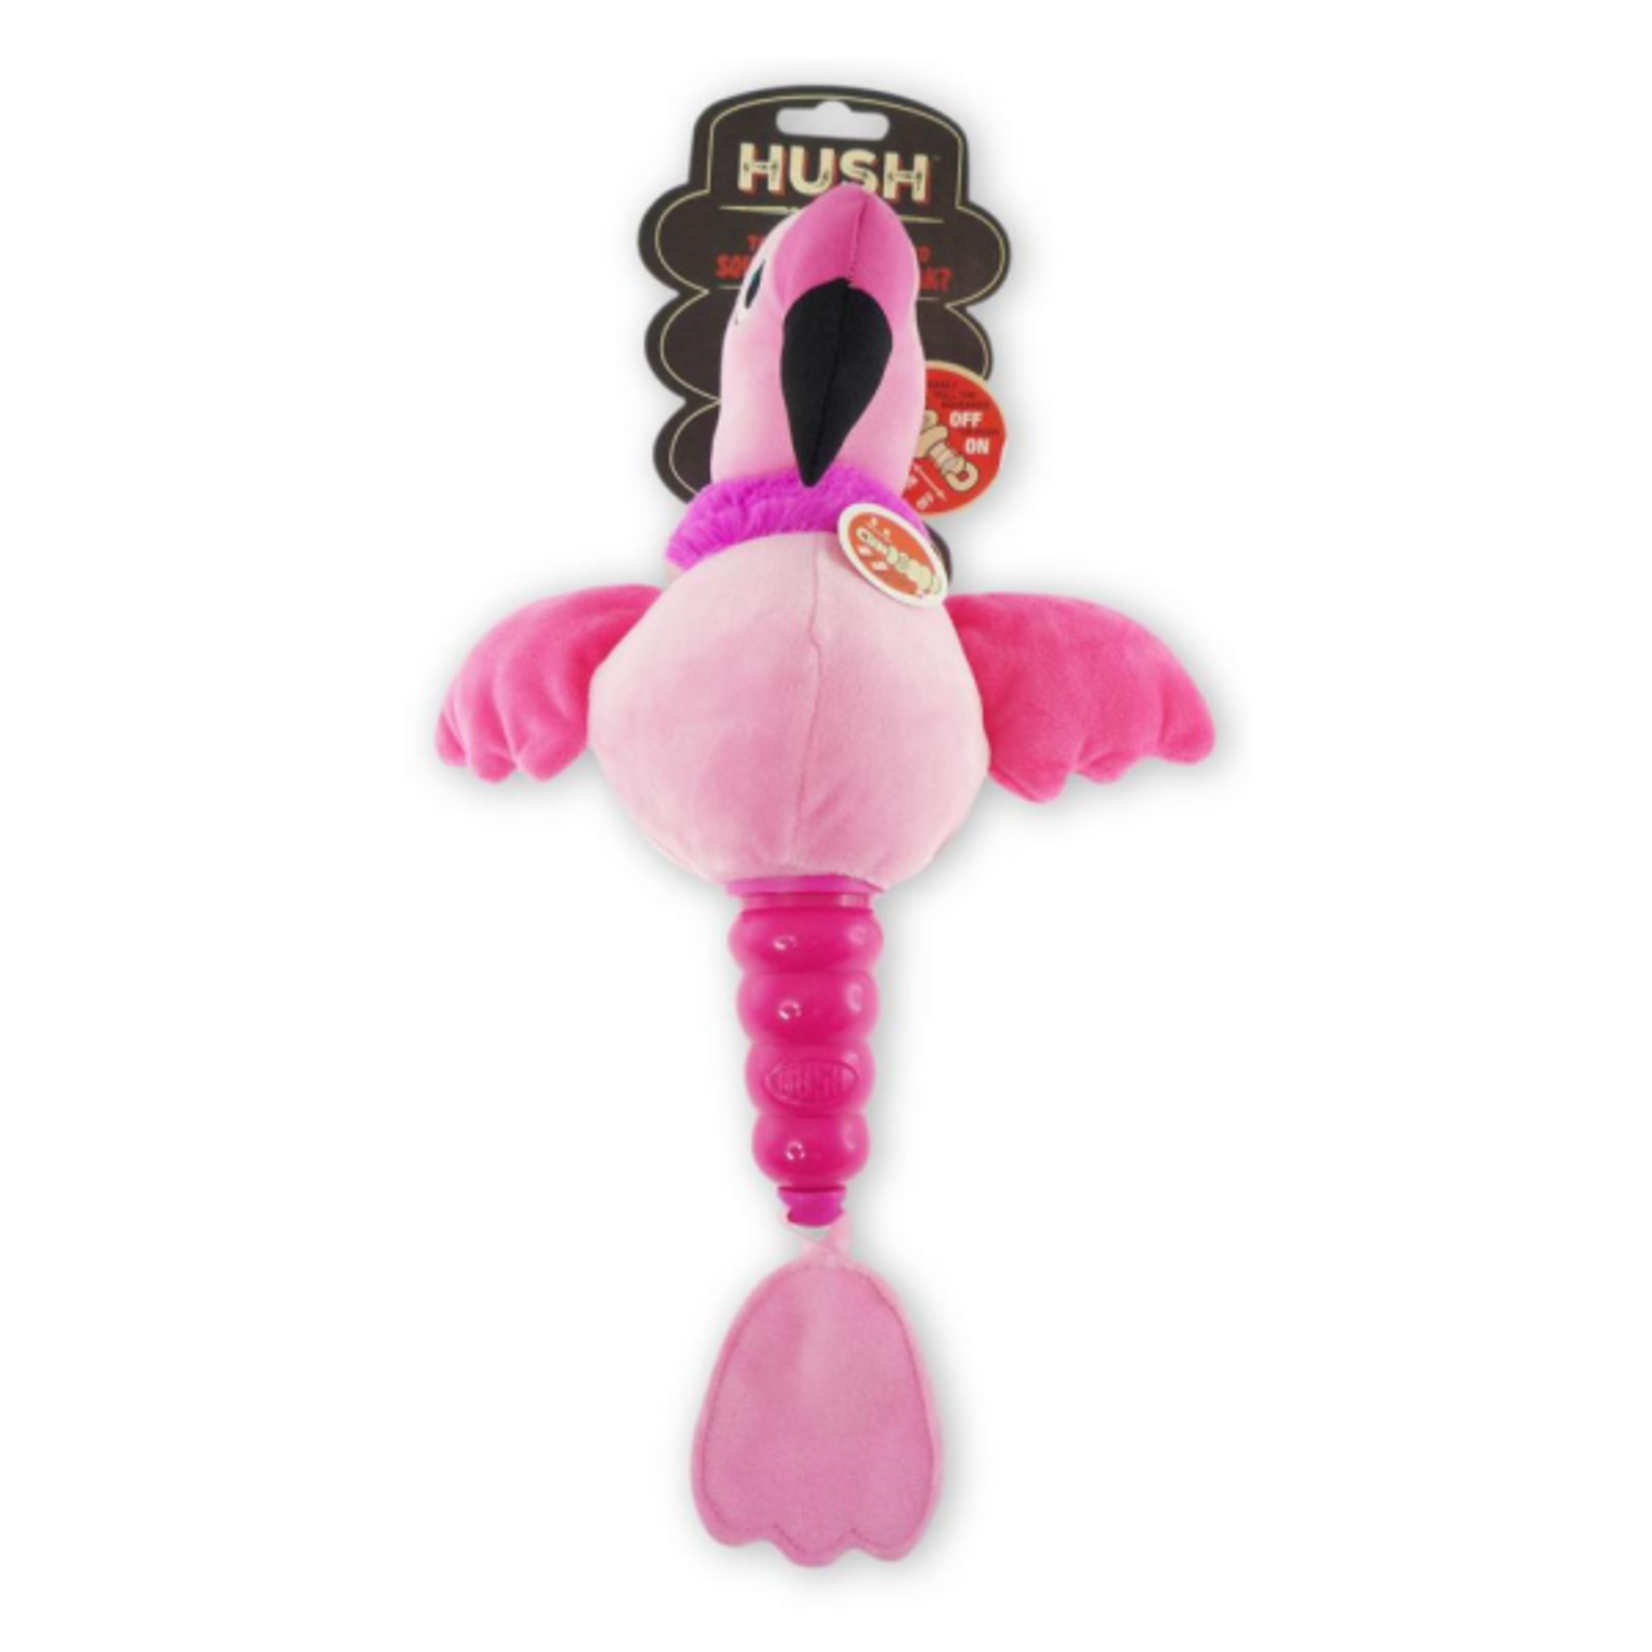 Hush Plush Hush Plush Flamingo Large